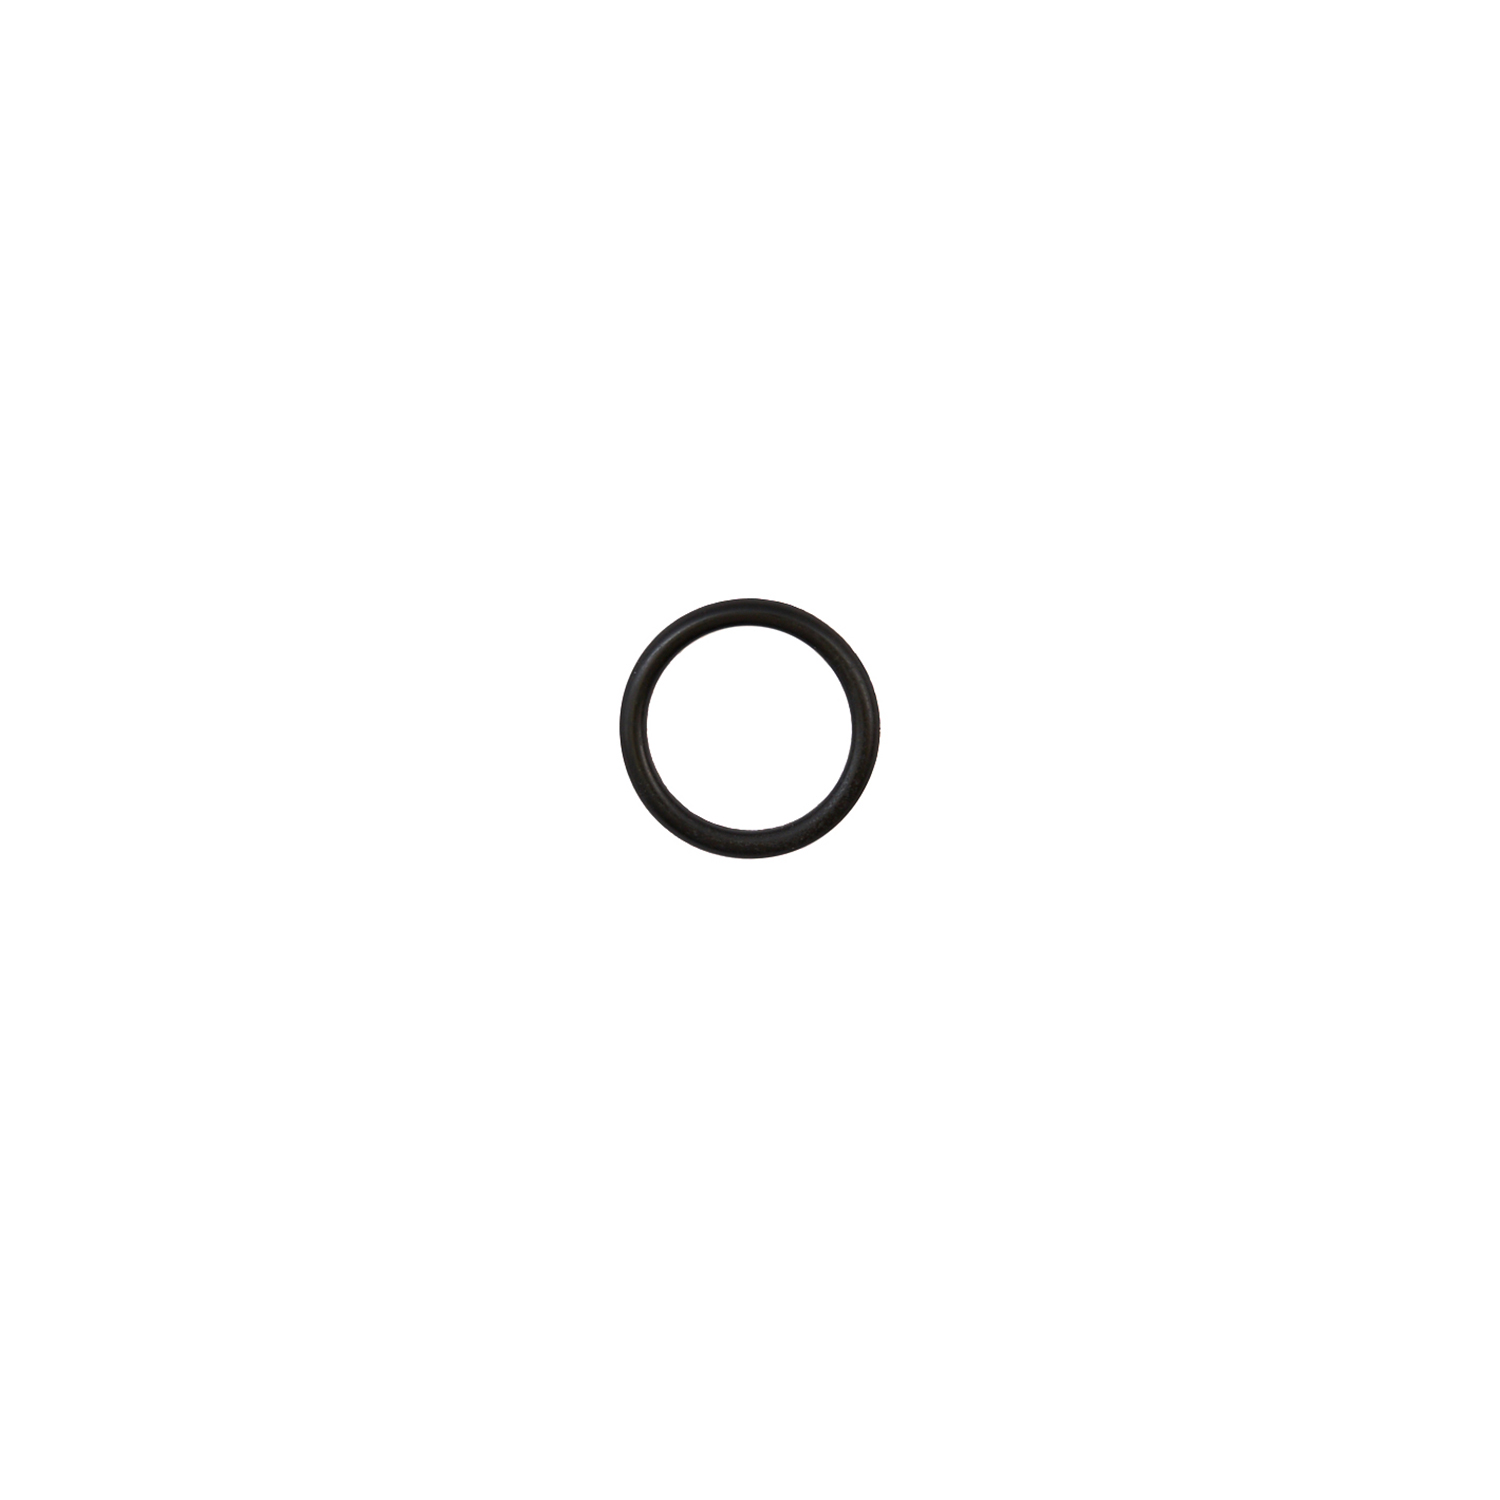 Кольцо уплотнительное 14*2 ( O-ring 14*2 ) RT-5565 поз.33